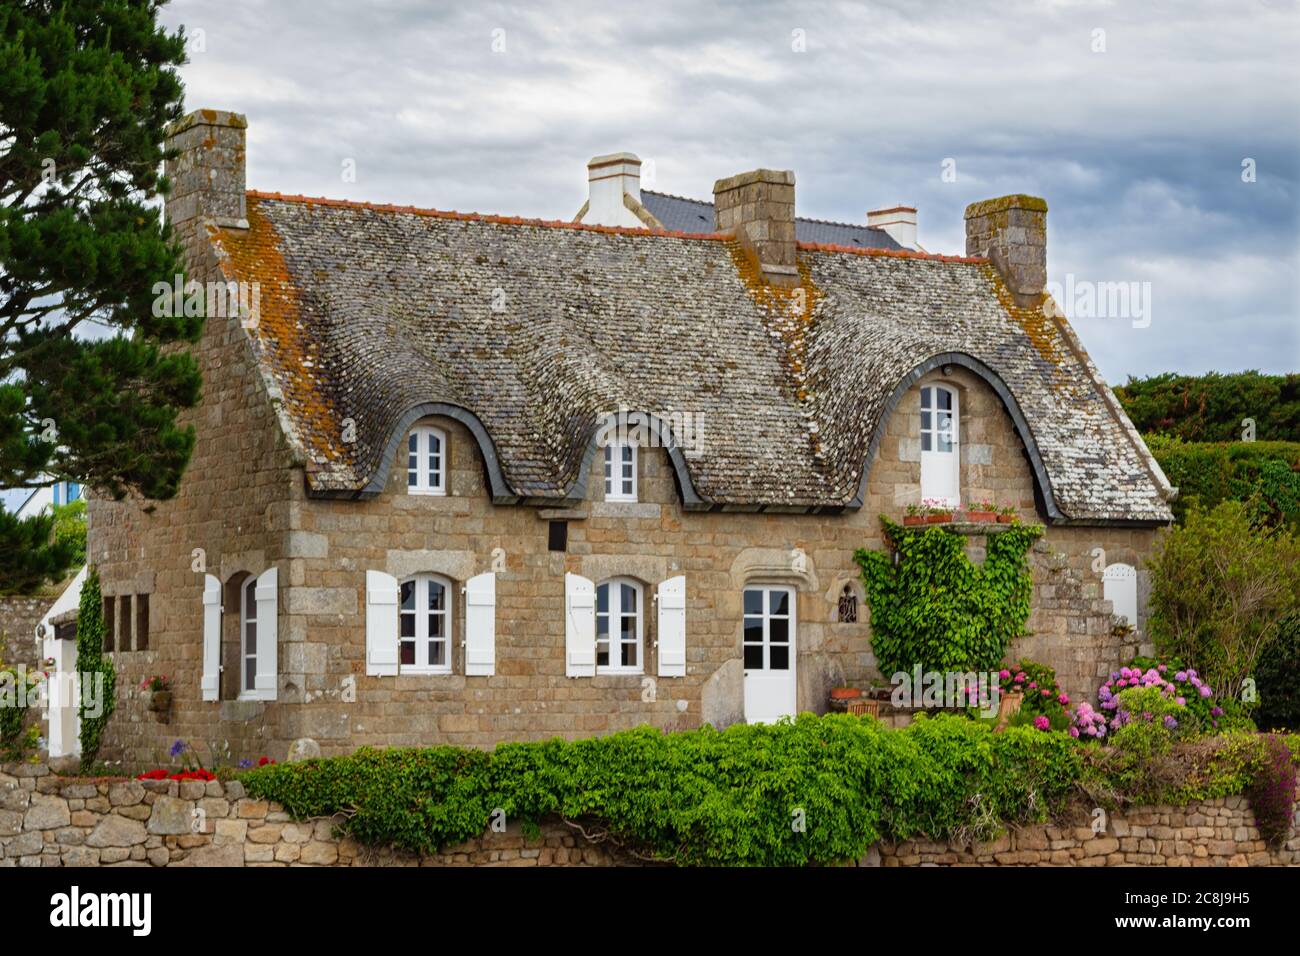 Belle maison bretonne avec ses toits en ardoise. ÎLE DU SAINT-CADO, BRETAGNE, FRANCE Banque D'Images